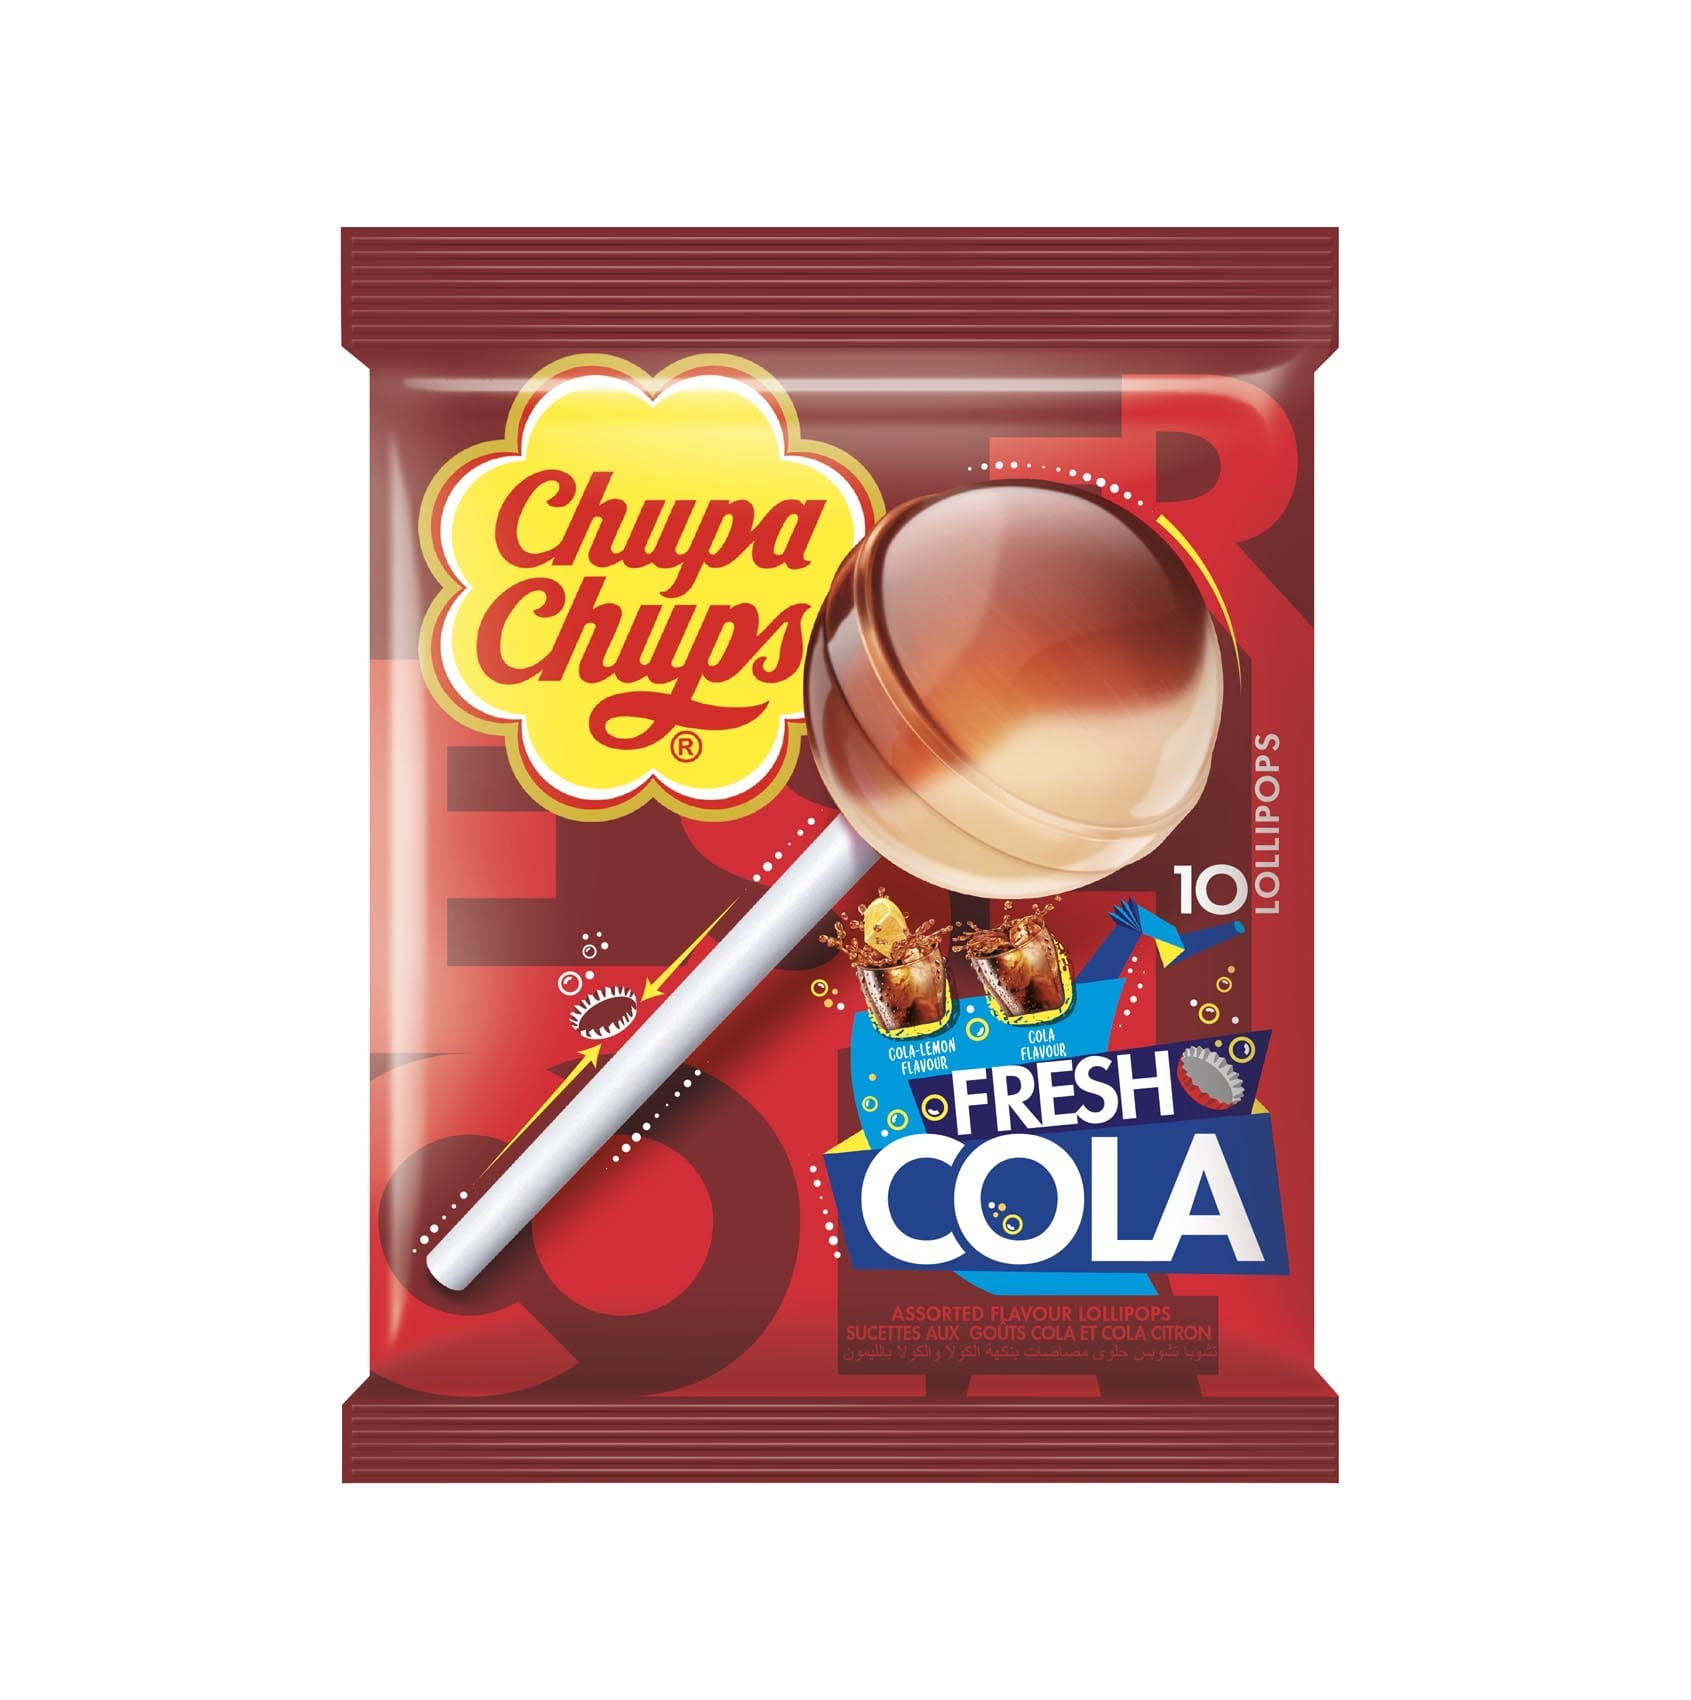 Chupa chups fresh cola, chupa chups coca cola, chupa chups cola